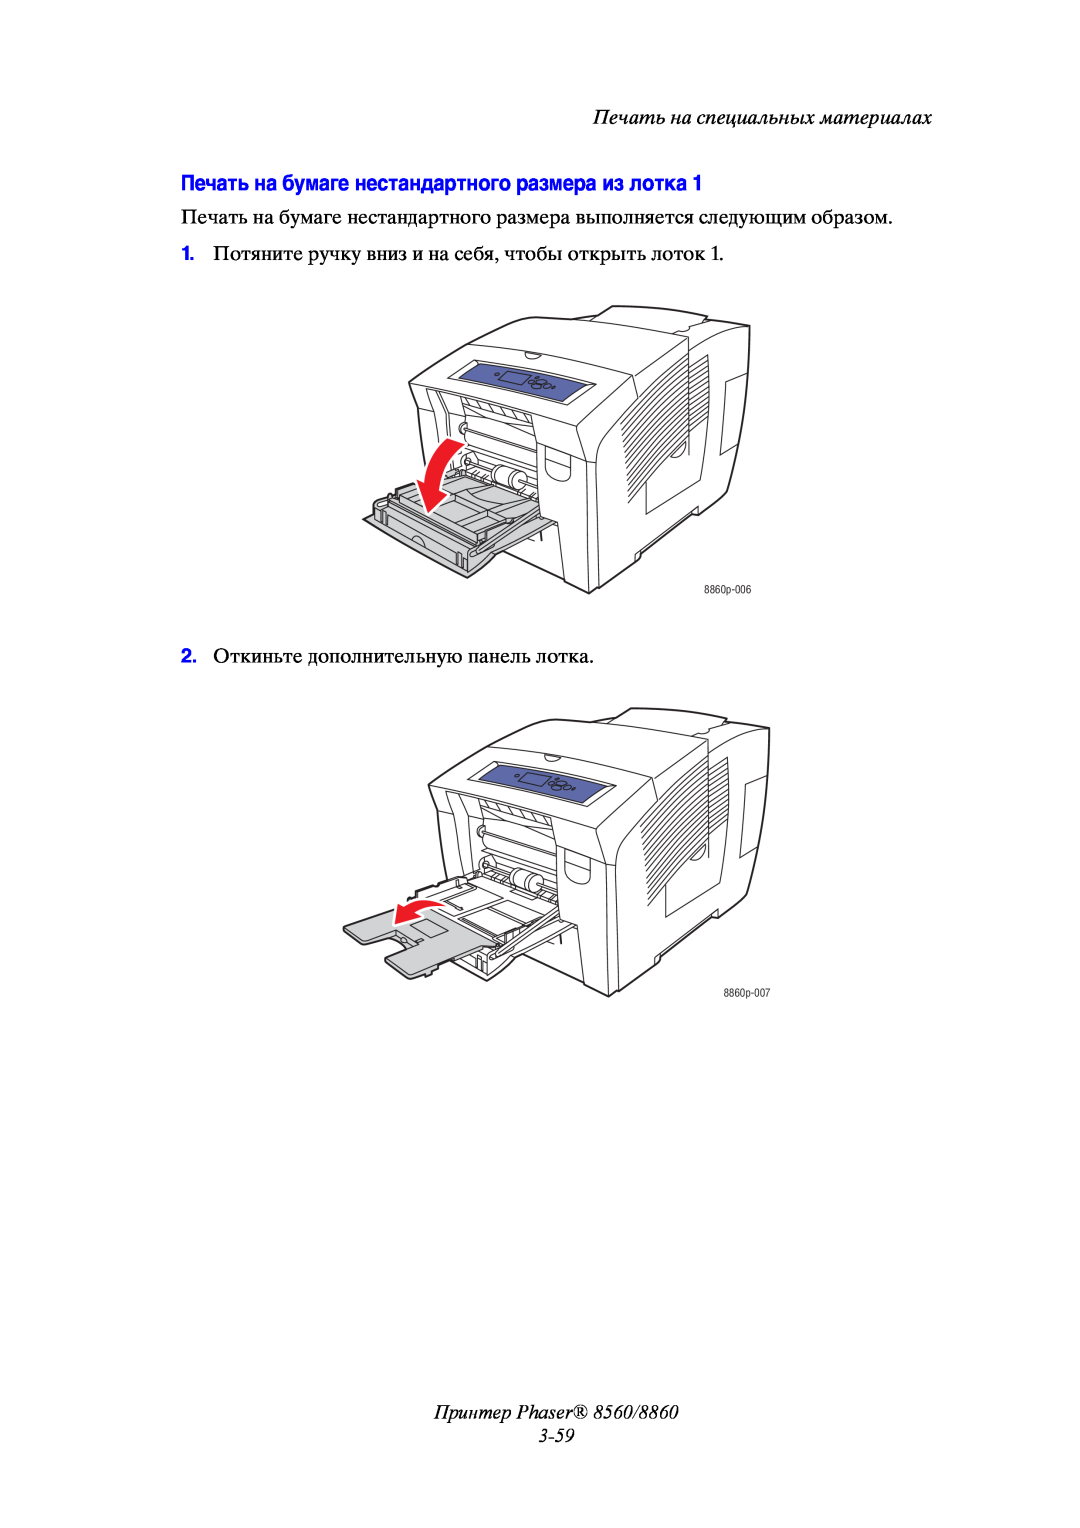 Xerox Печать на бумаге нестандартного размера из лотка, Принтер Phaser 8560/8860 3-59, Печать на специальных материалах 